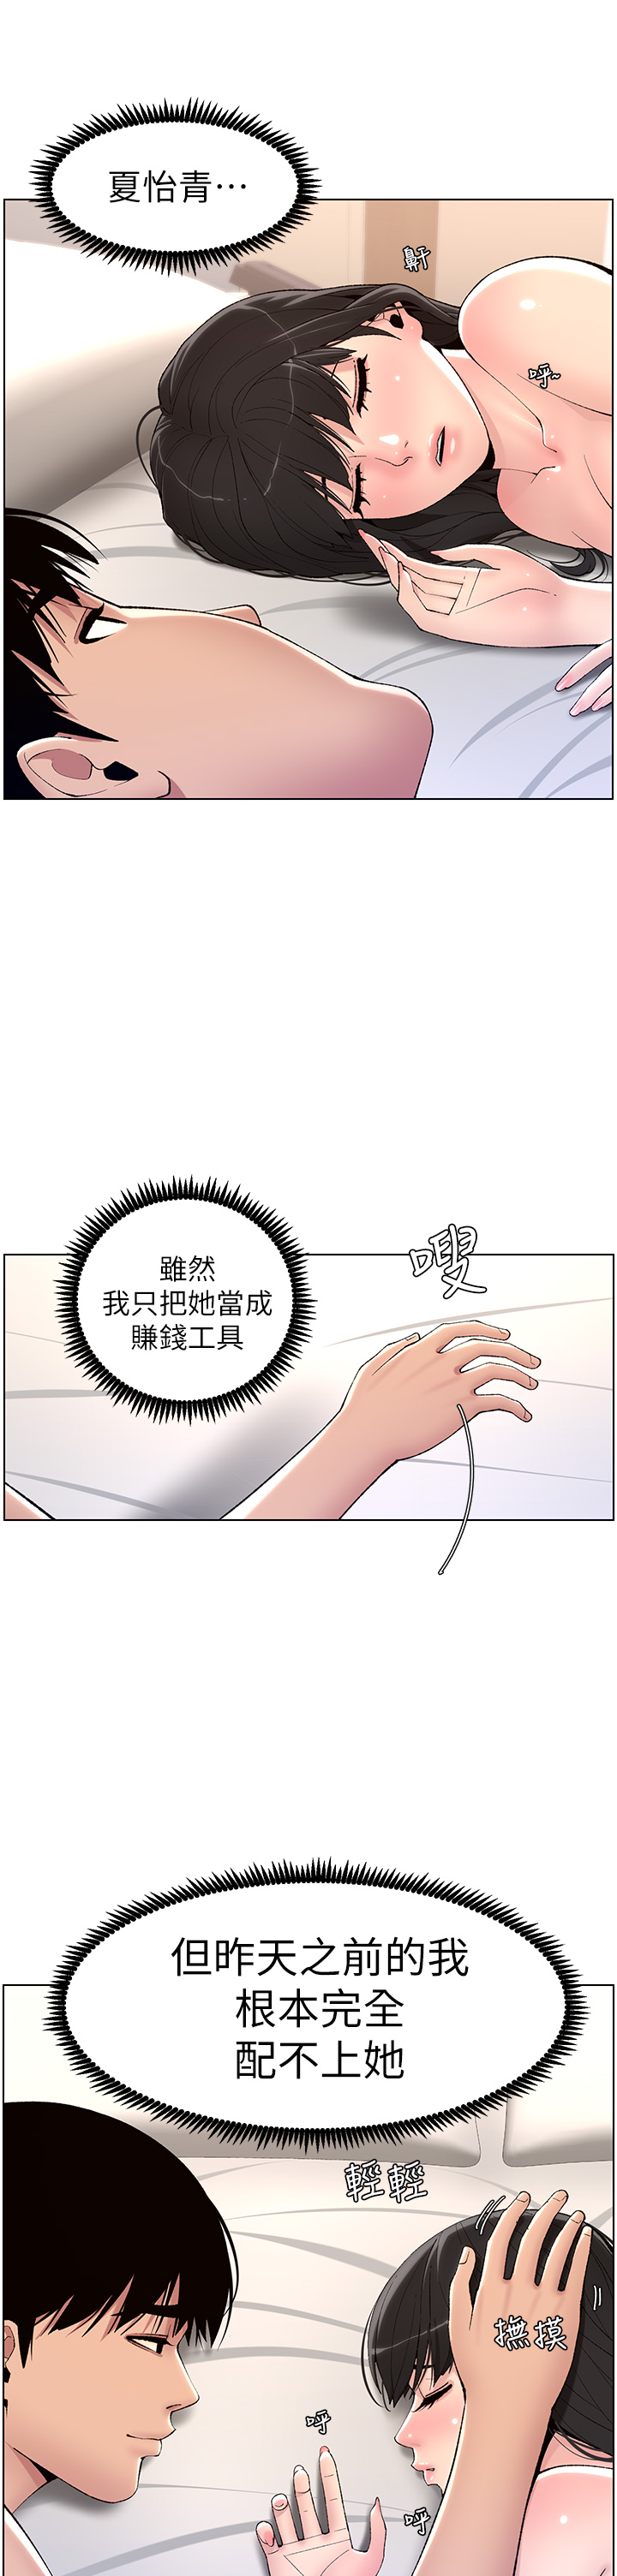 韩国污漫画 帝王App 第11话 少女的第一次高潮 17